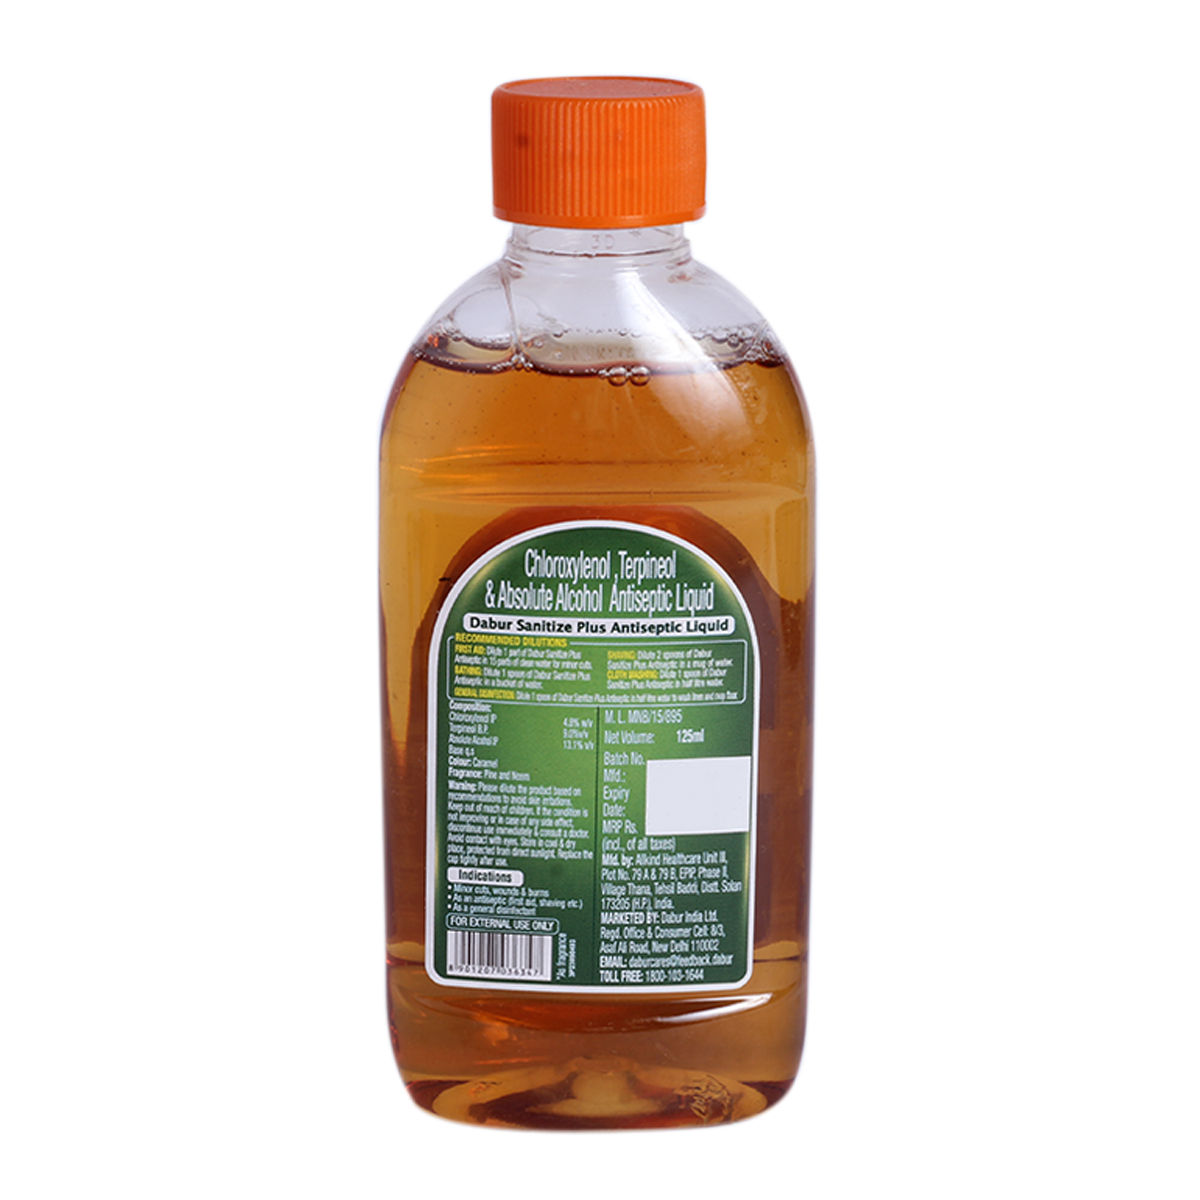 Dabur Sanitize Plus Antiseptic Liquid, 125 ml, Pack of 1 